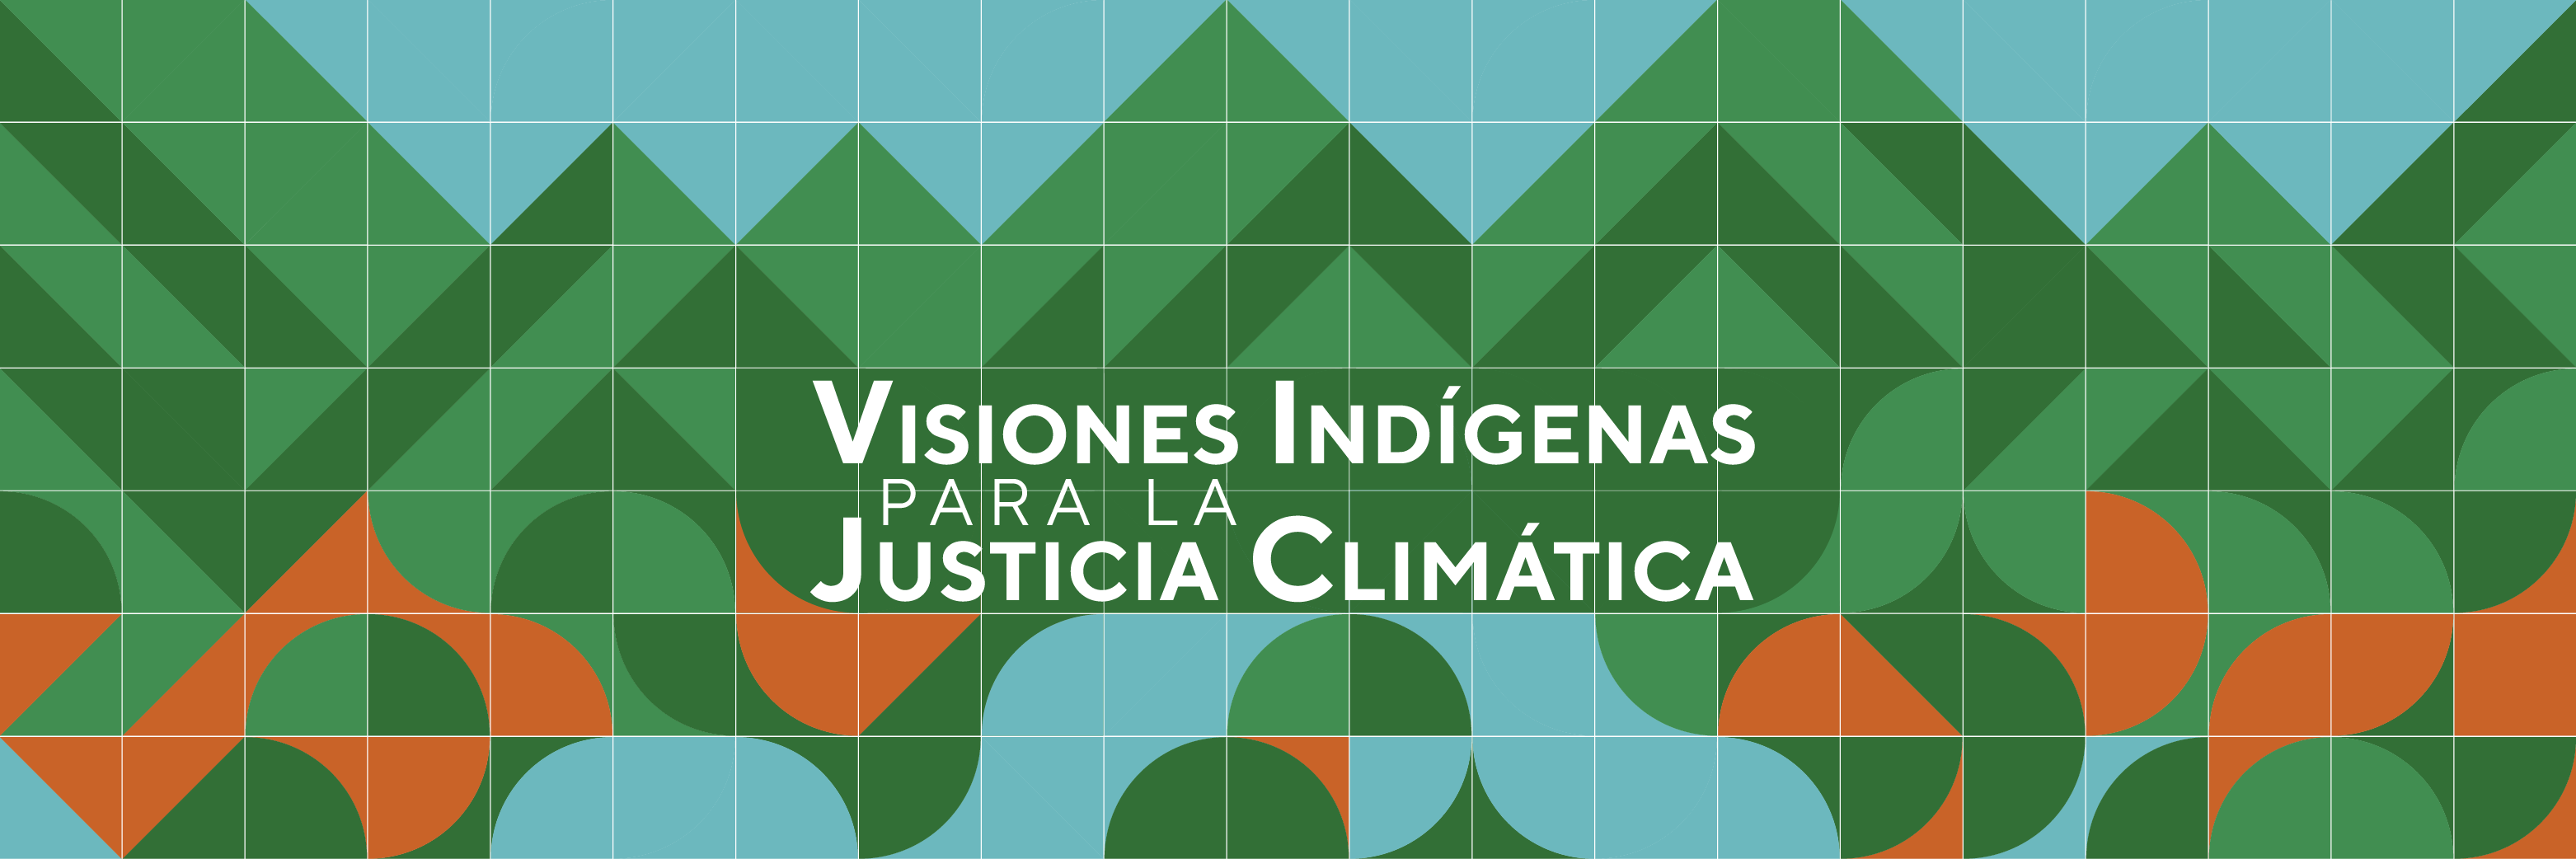 Visiones Indígenas: Compromiso por la Justicia Climática